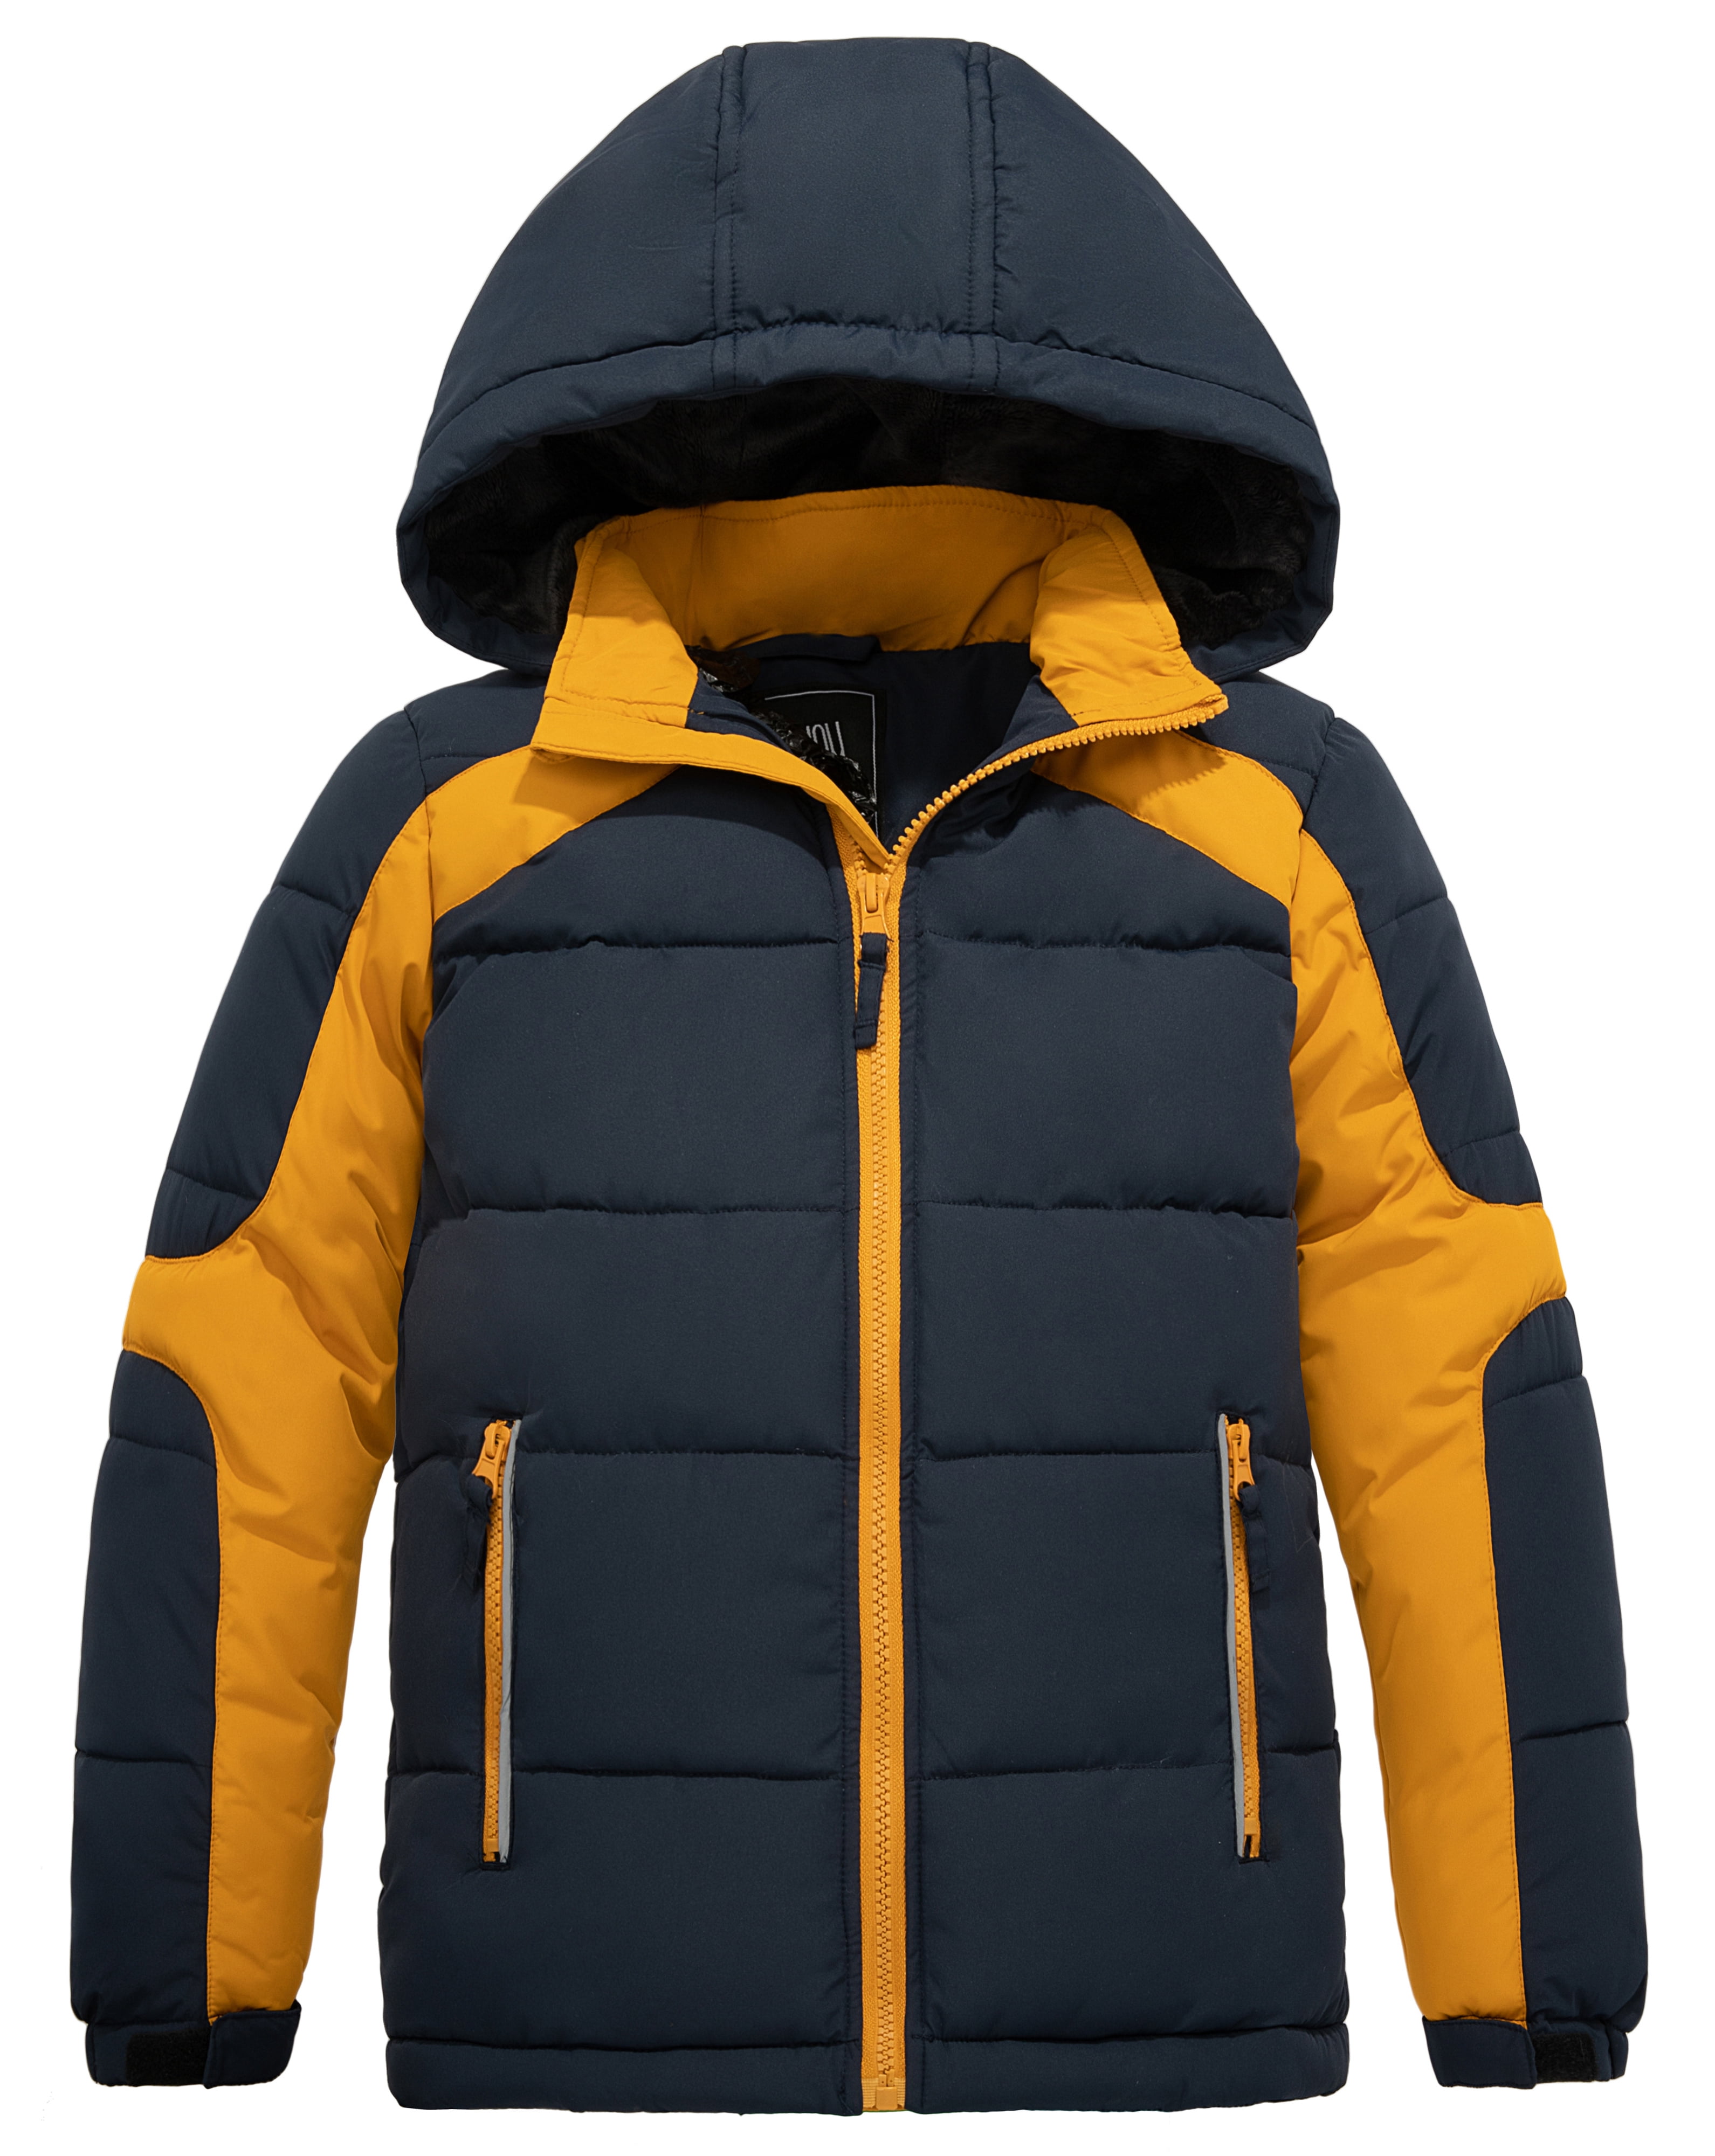 ZSHOW Boys' Puffer Jacket Warm Winter Coat Waterproof Hooded Outerwear 